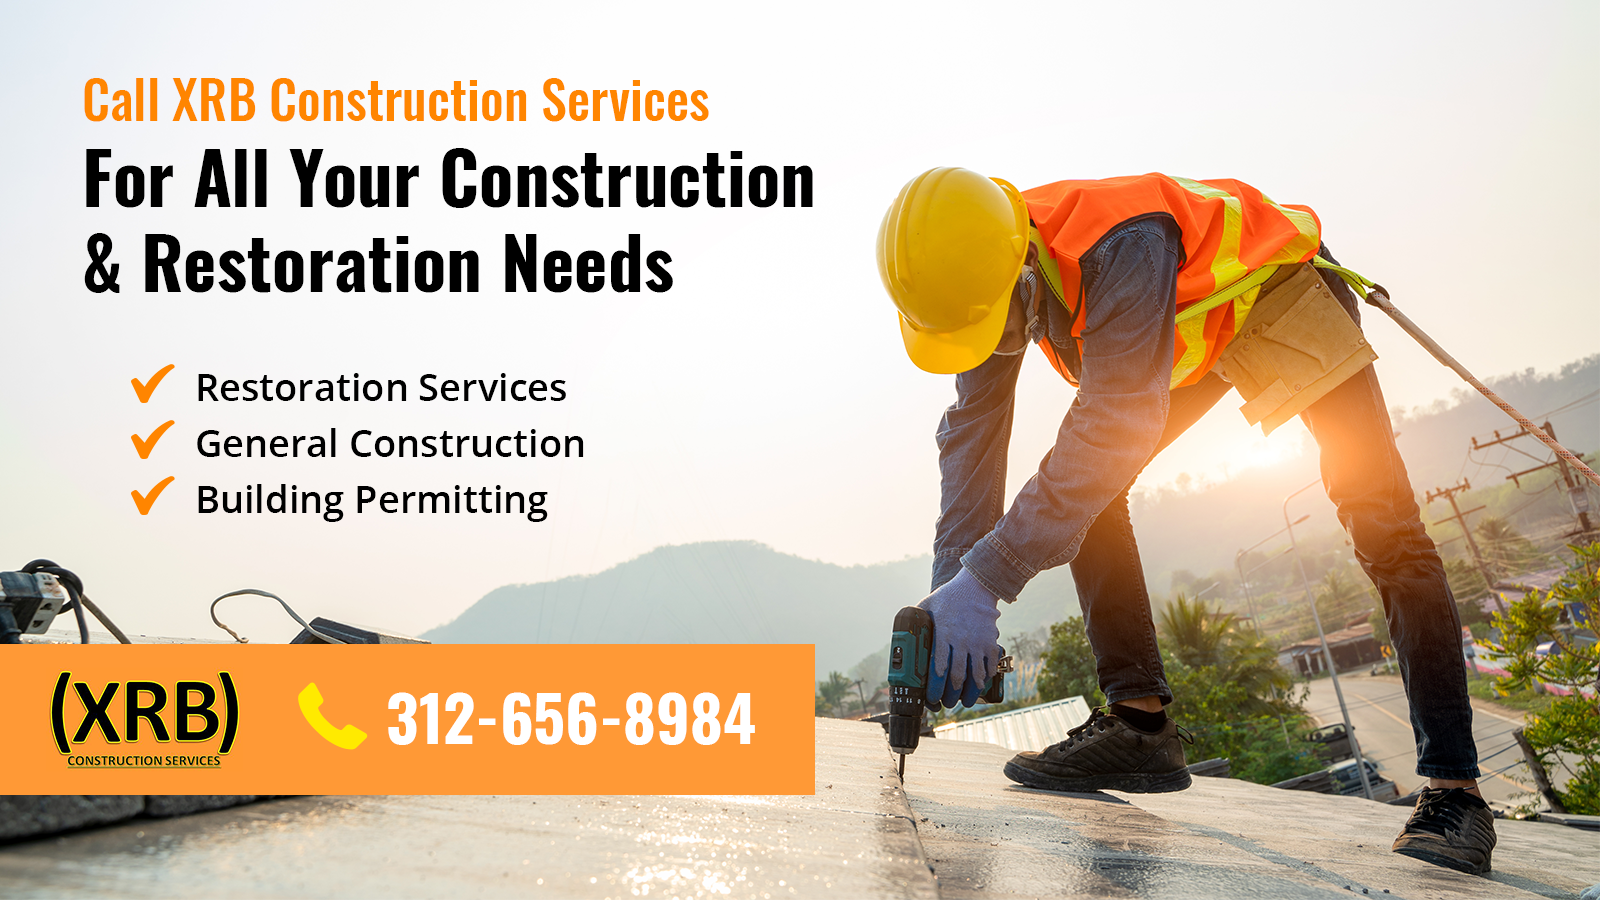 (XRB) Construction Services, LLC 4933 Butterfield Rd, Hillside Illinois 60162